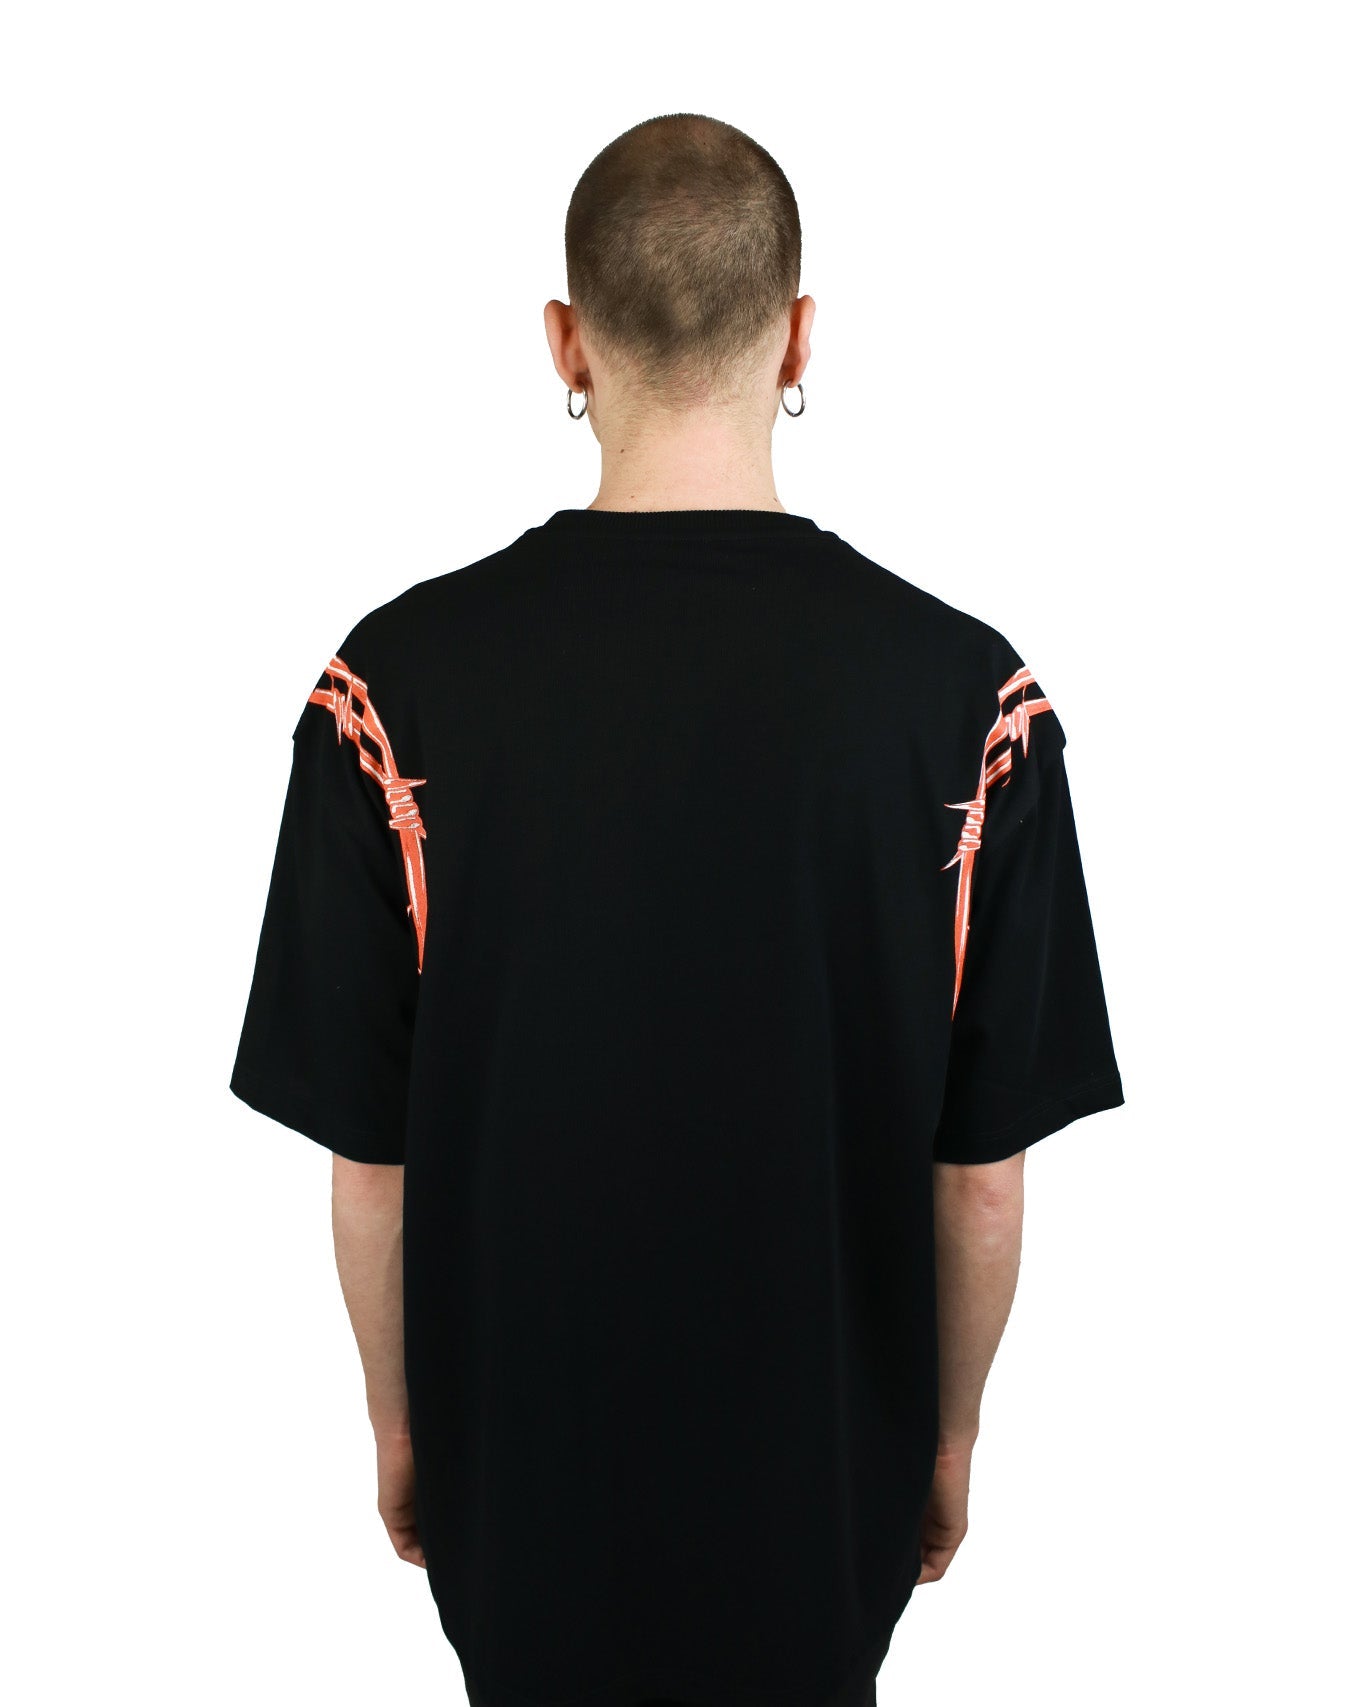 Phobia Archive t-shirt filo spinato Black/orange